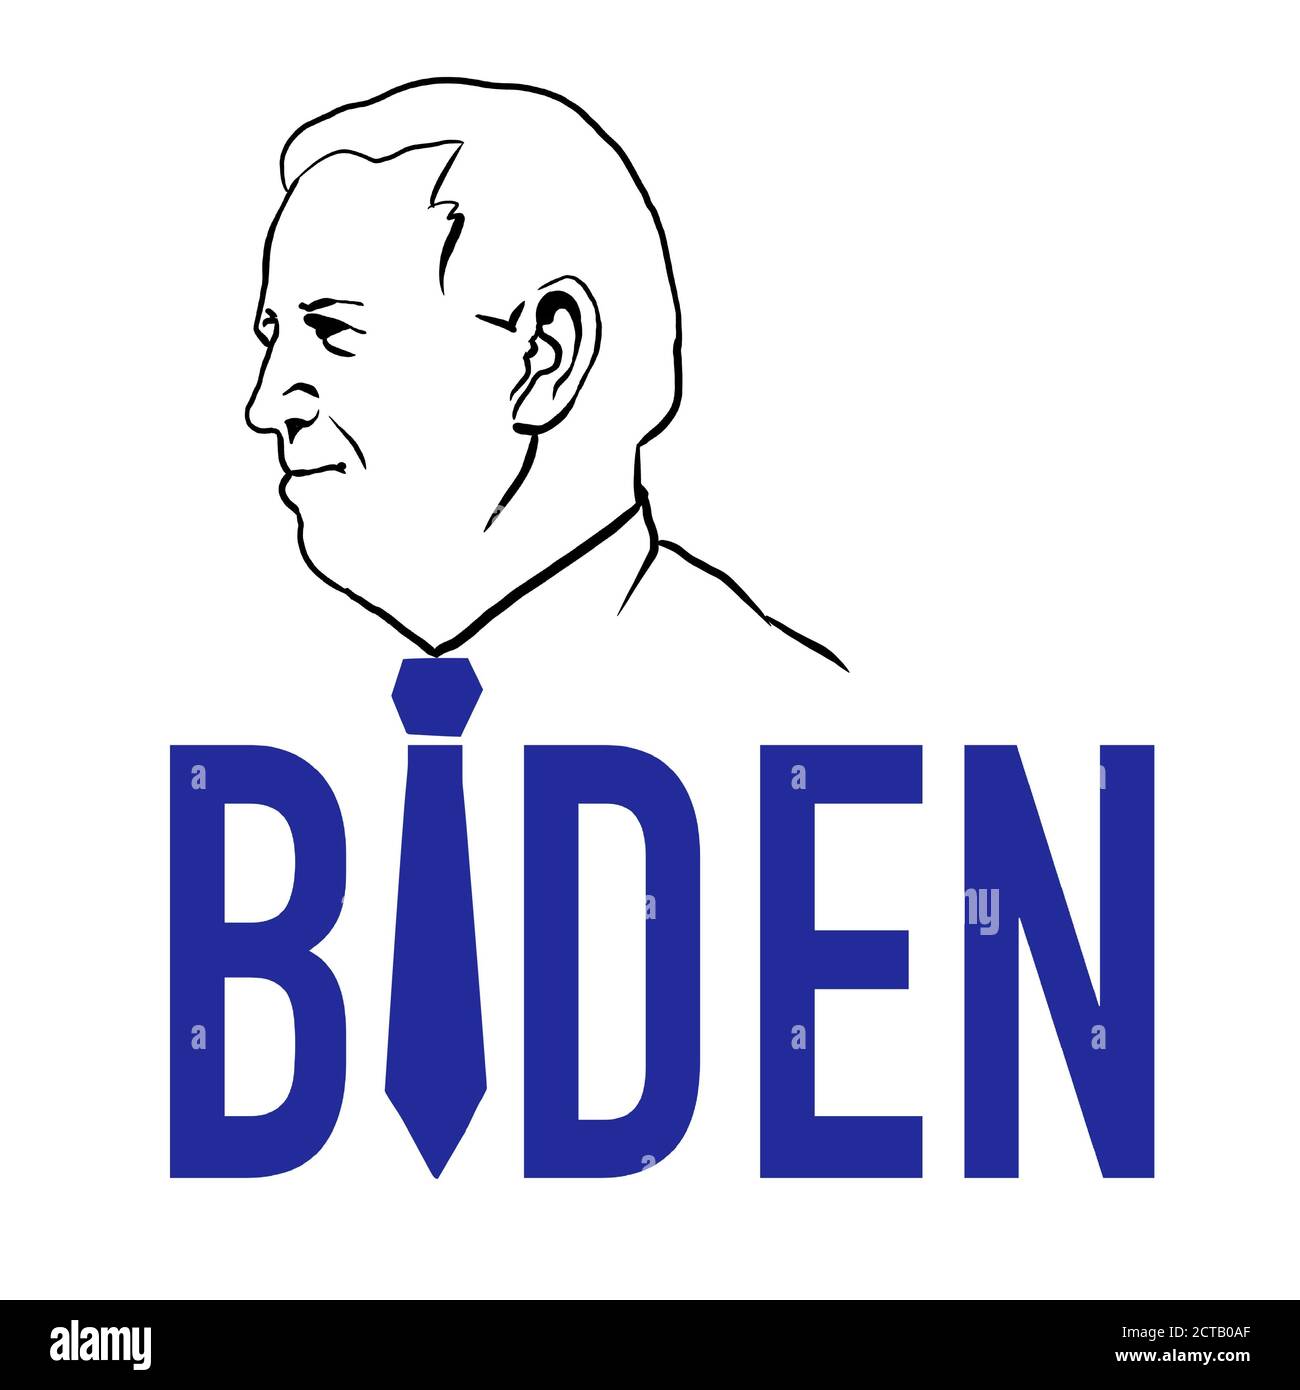 17. September 2020: Donald Trump gegen Joe Biden, Präsidentschaftskandidaten. Demokraten gegen Republikaner. Illustration eines roten Elefanten und eines blauen Donke Stockfoto